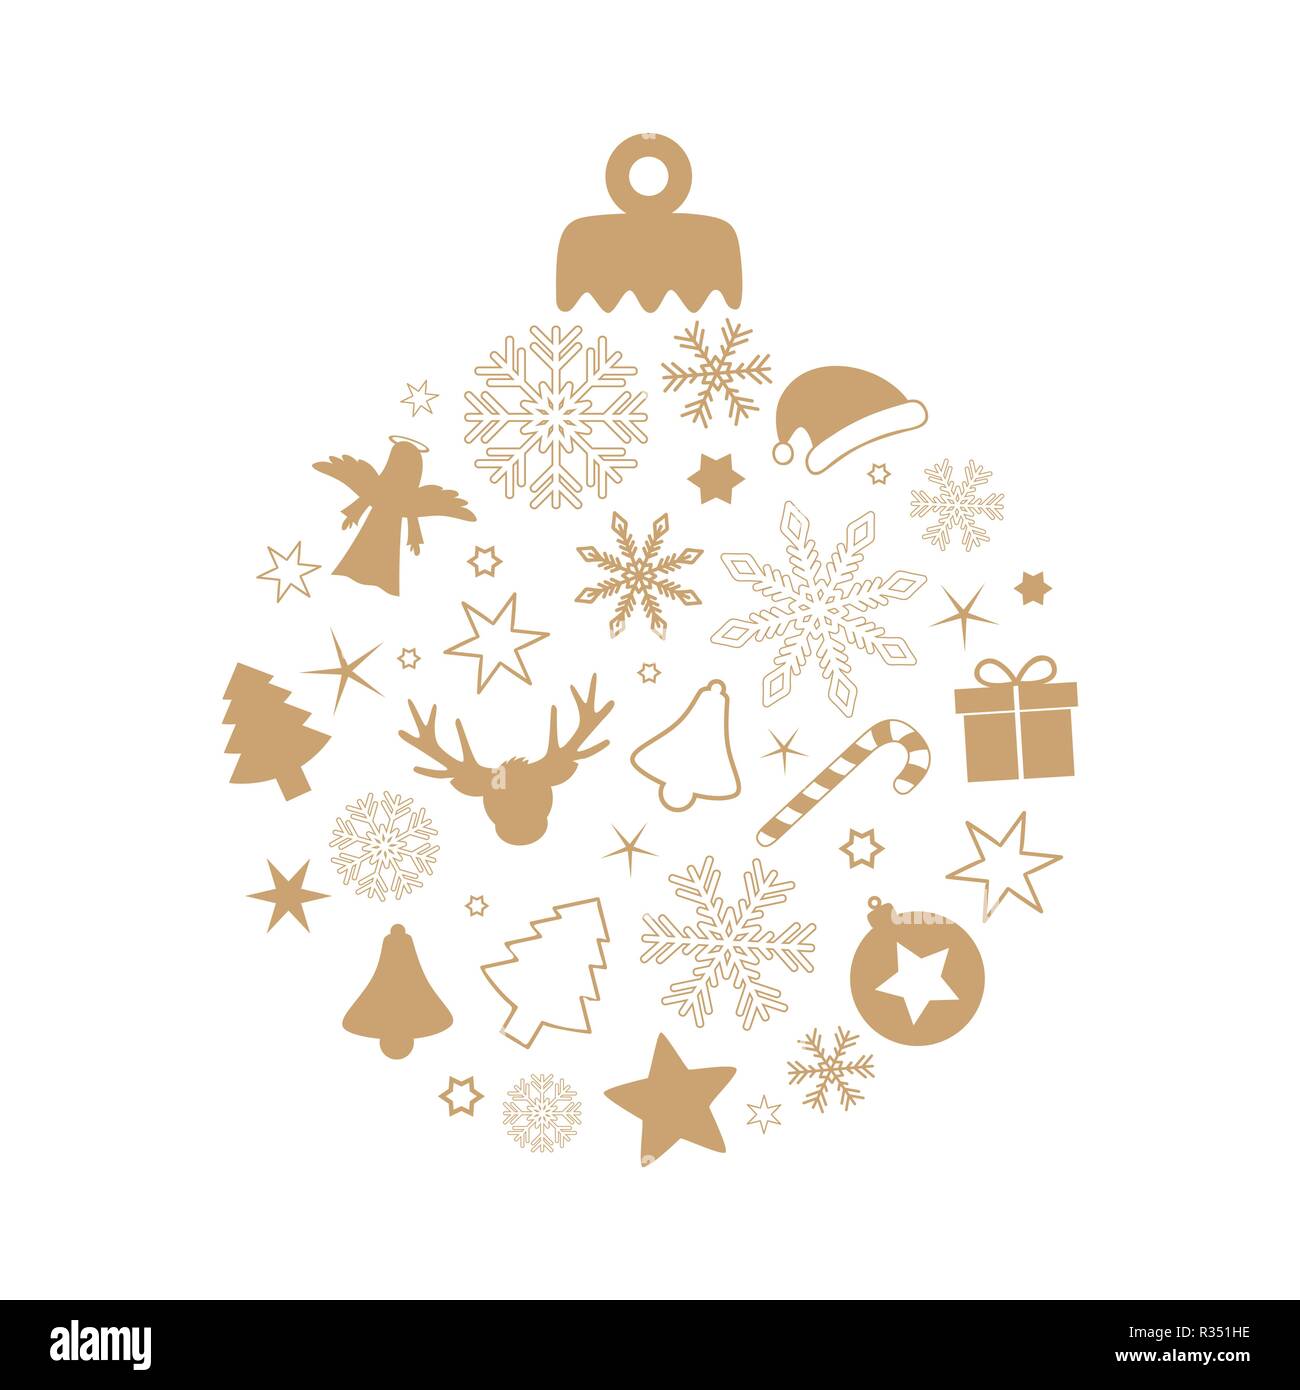 Bola de Navidad con diferentes símbolos reno estrella copo de nieve abeto candy cane Don Angel bell aislado sobre fondo blanco. Ilustración del Vector